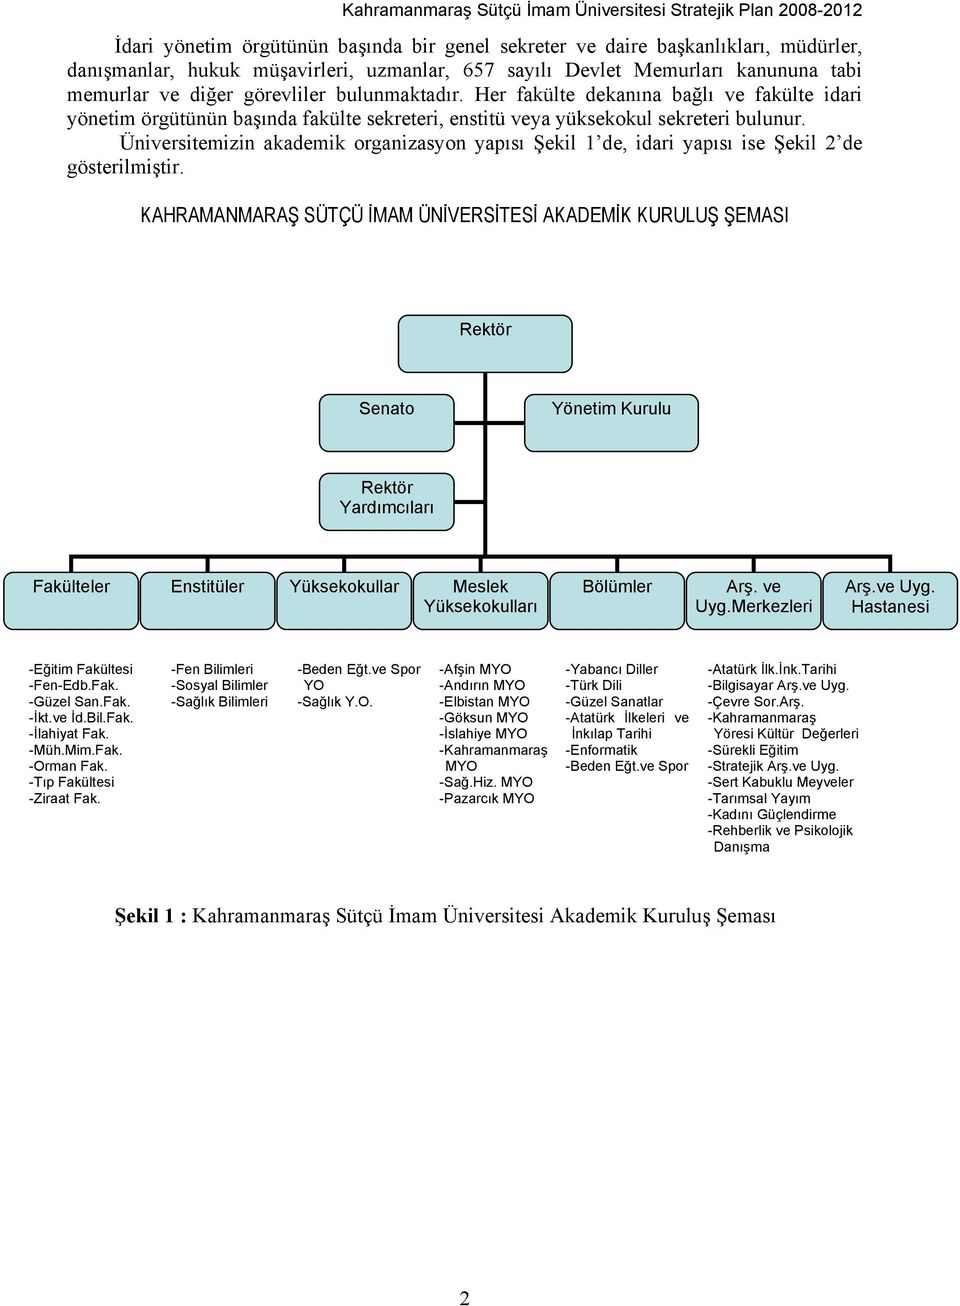 Üniversitemizin akademik organizasyon yapısı Şekil 1 de, idari yapısı ise Şekil 2 de gösterilmiştir.